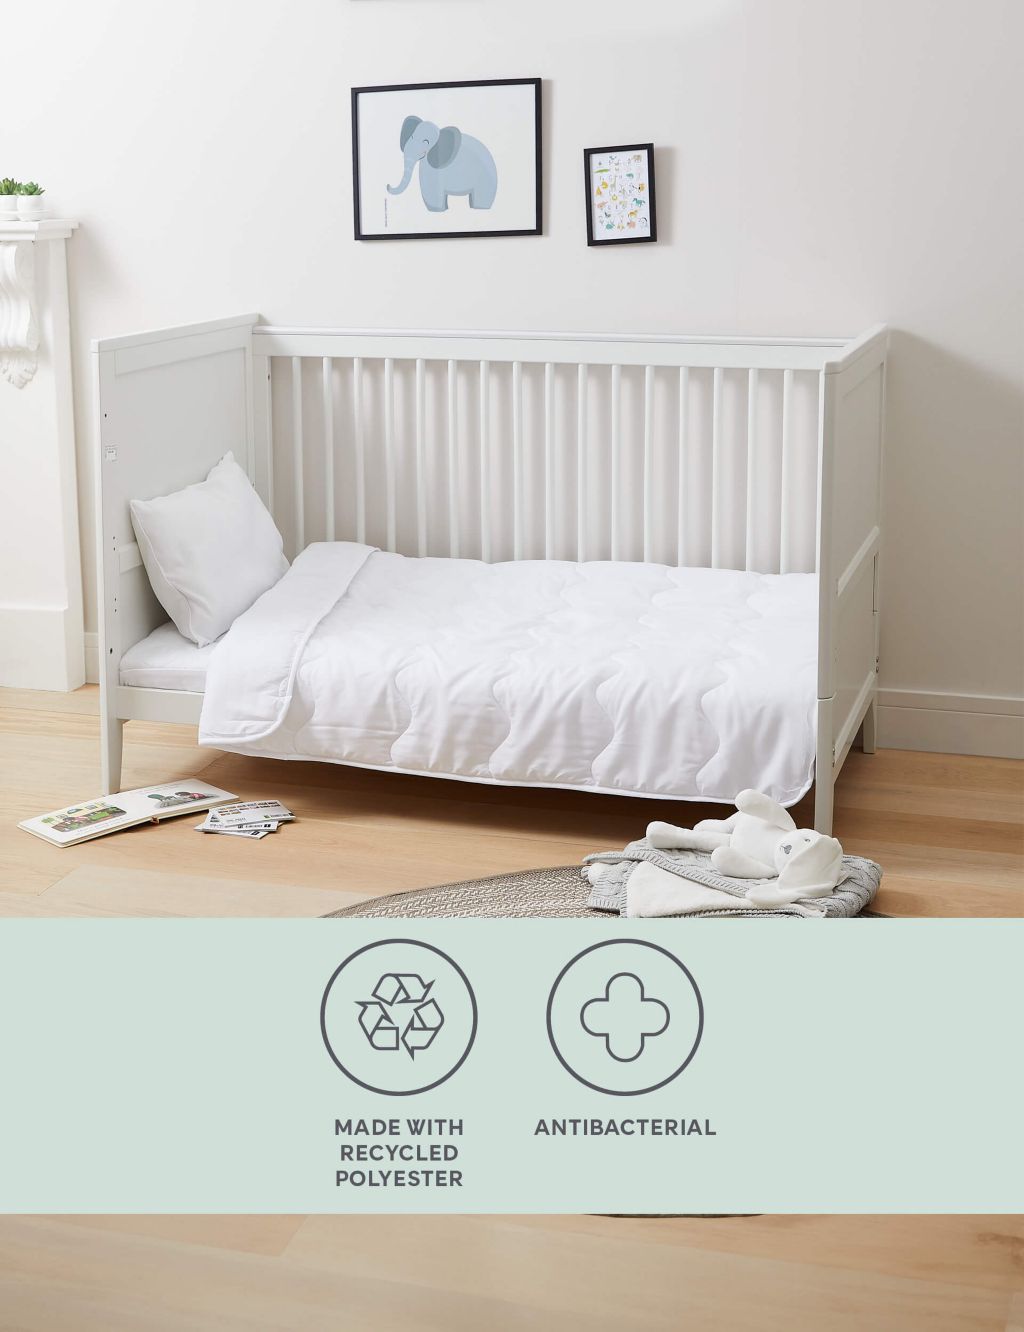 Antibacterial Cot Bed Duvet & Pillow Set image 1